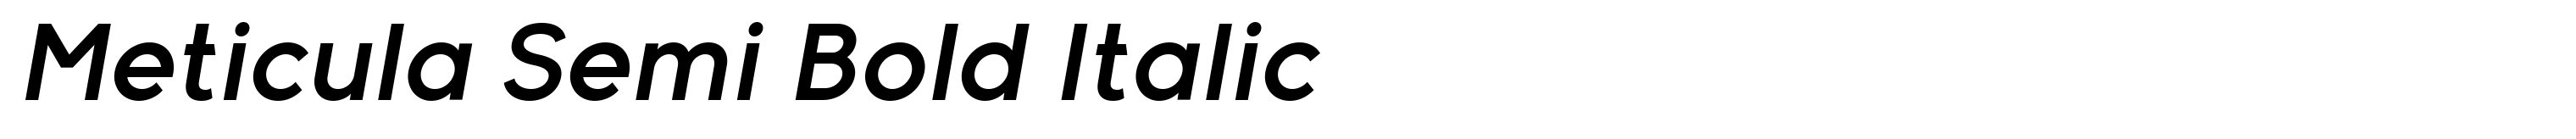 Meticula Semi Bold Italic